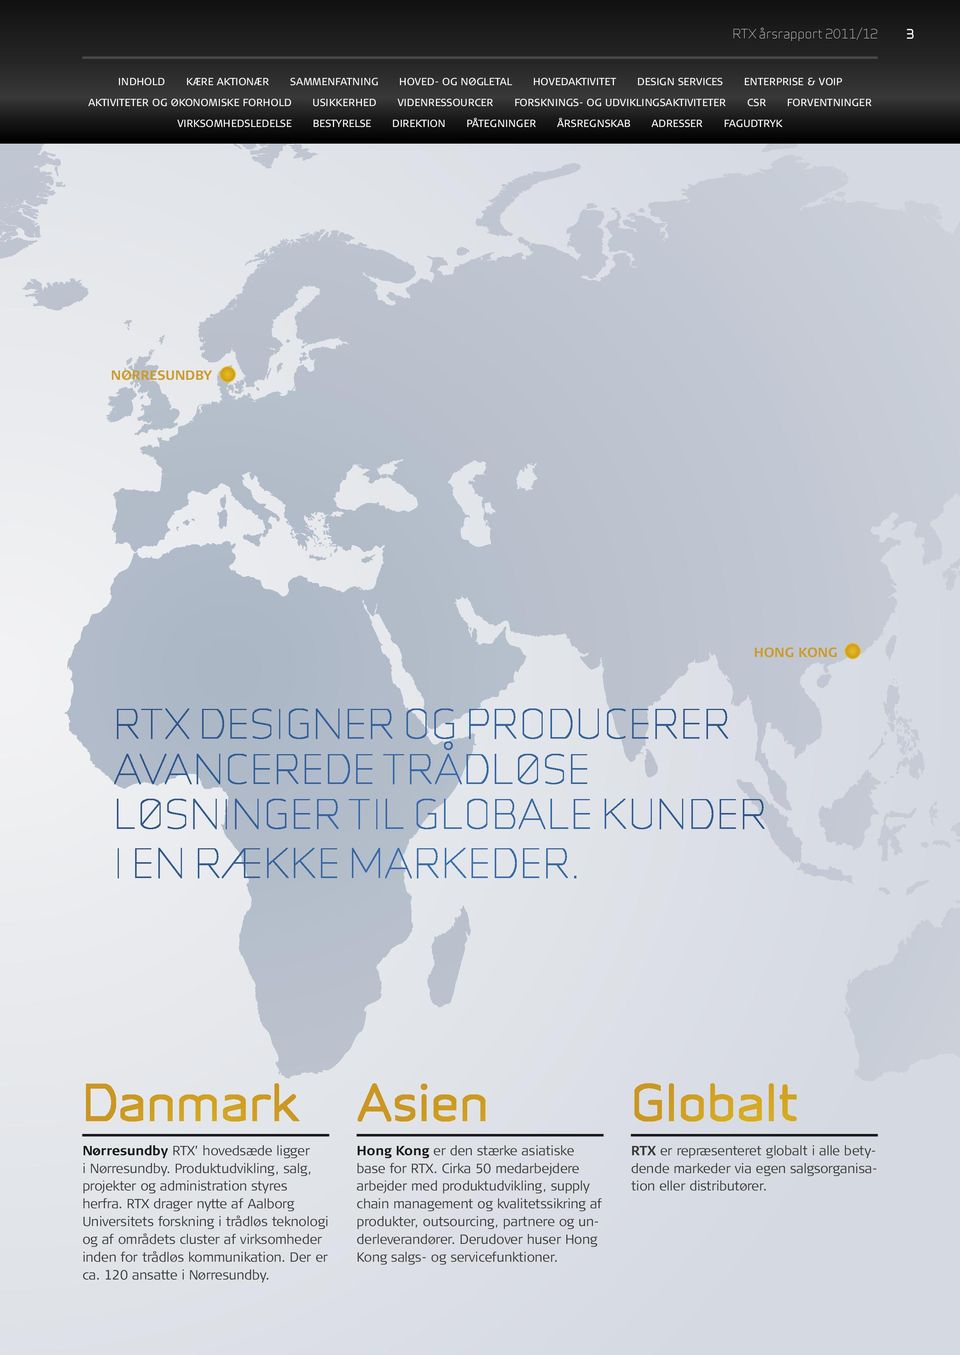 RTX drager nytte af Aalborg Universitets forskning i trådløs teknologi og af områdets cluster af virksomheder inden for trådløs kommunikation. Der er ca. 120 ansatte i Nørresundby.